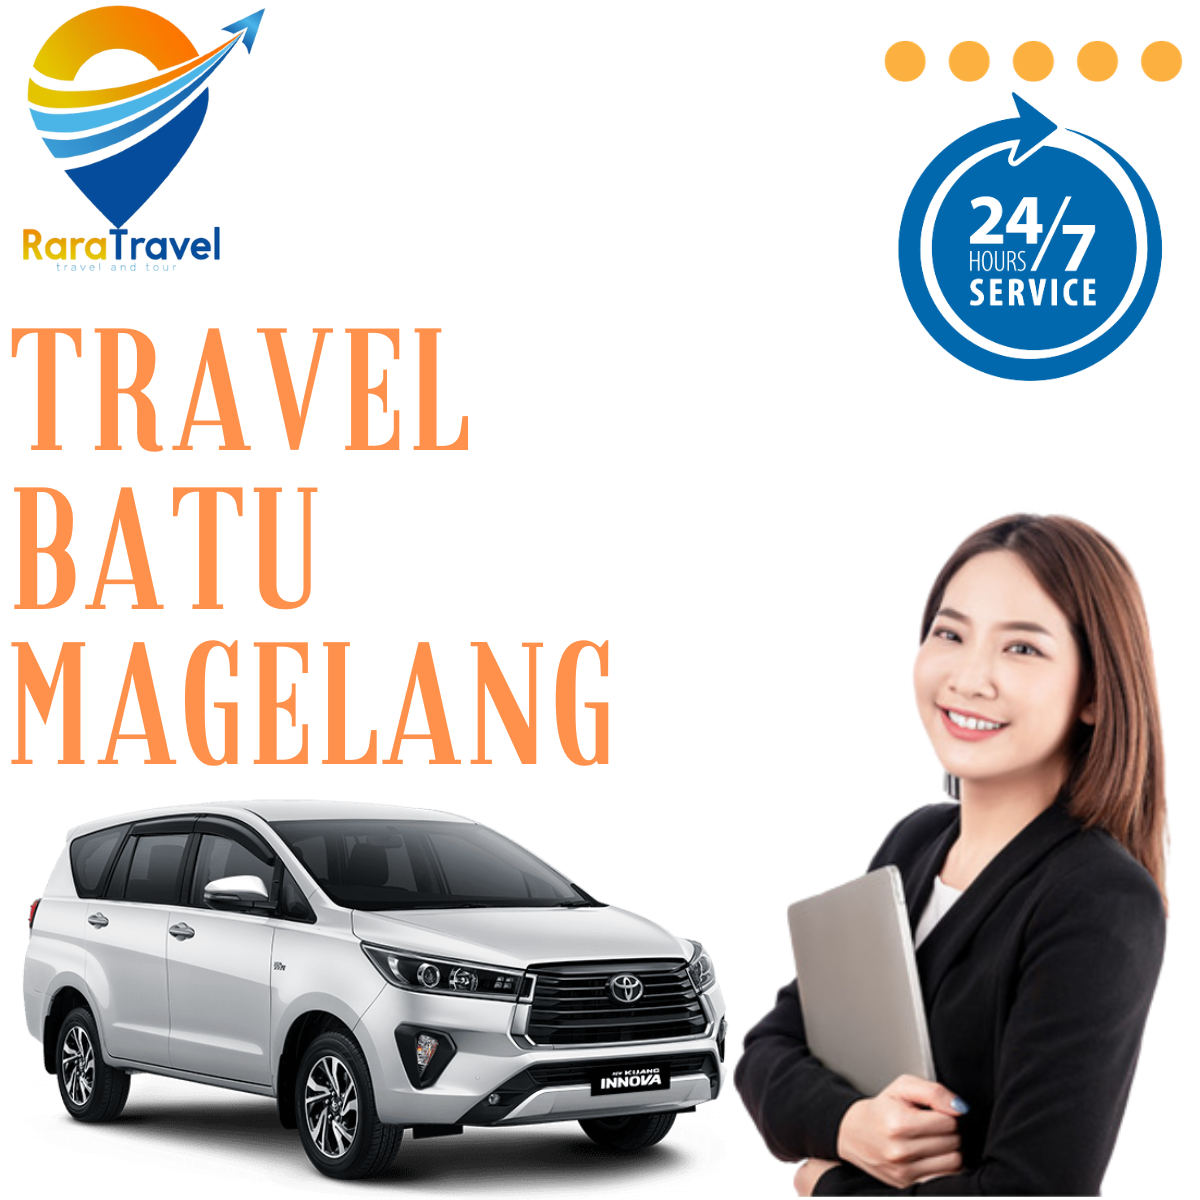 Travel Batu Magelang Harga Tiket Murah via TOLL